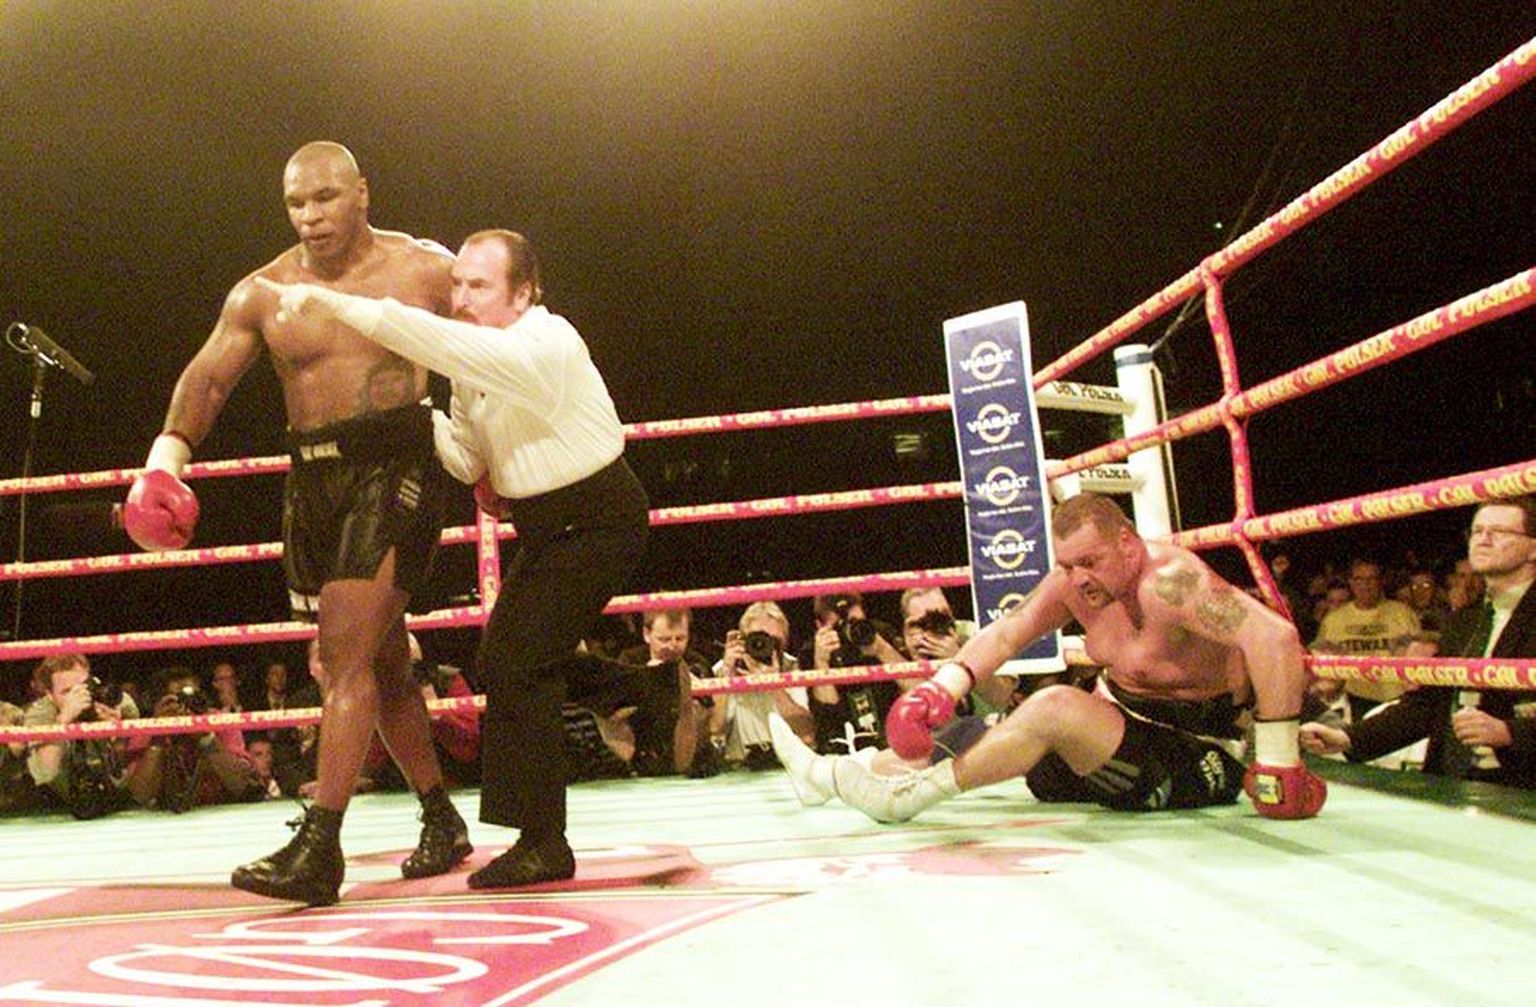 Sümboolne pilt 2001. aastast: Mike Tyson on löönud pikali Brian Nielseni, millega kinnitas mustanahaliste üleolekut valgete üle poksiringis. Tänapäeva poksis on olukord vastupidine
– valgenahalised valitsevad raskekaalu poksi ega anna tumedanahalistele sõnaõigust.